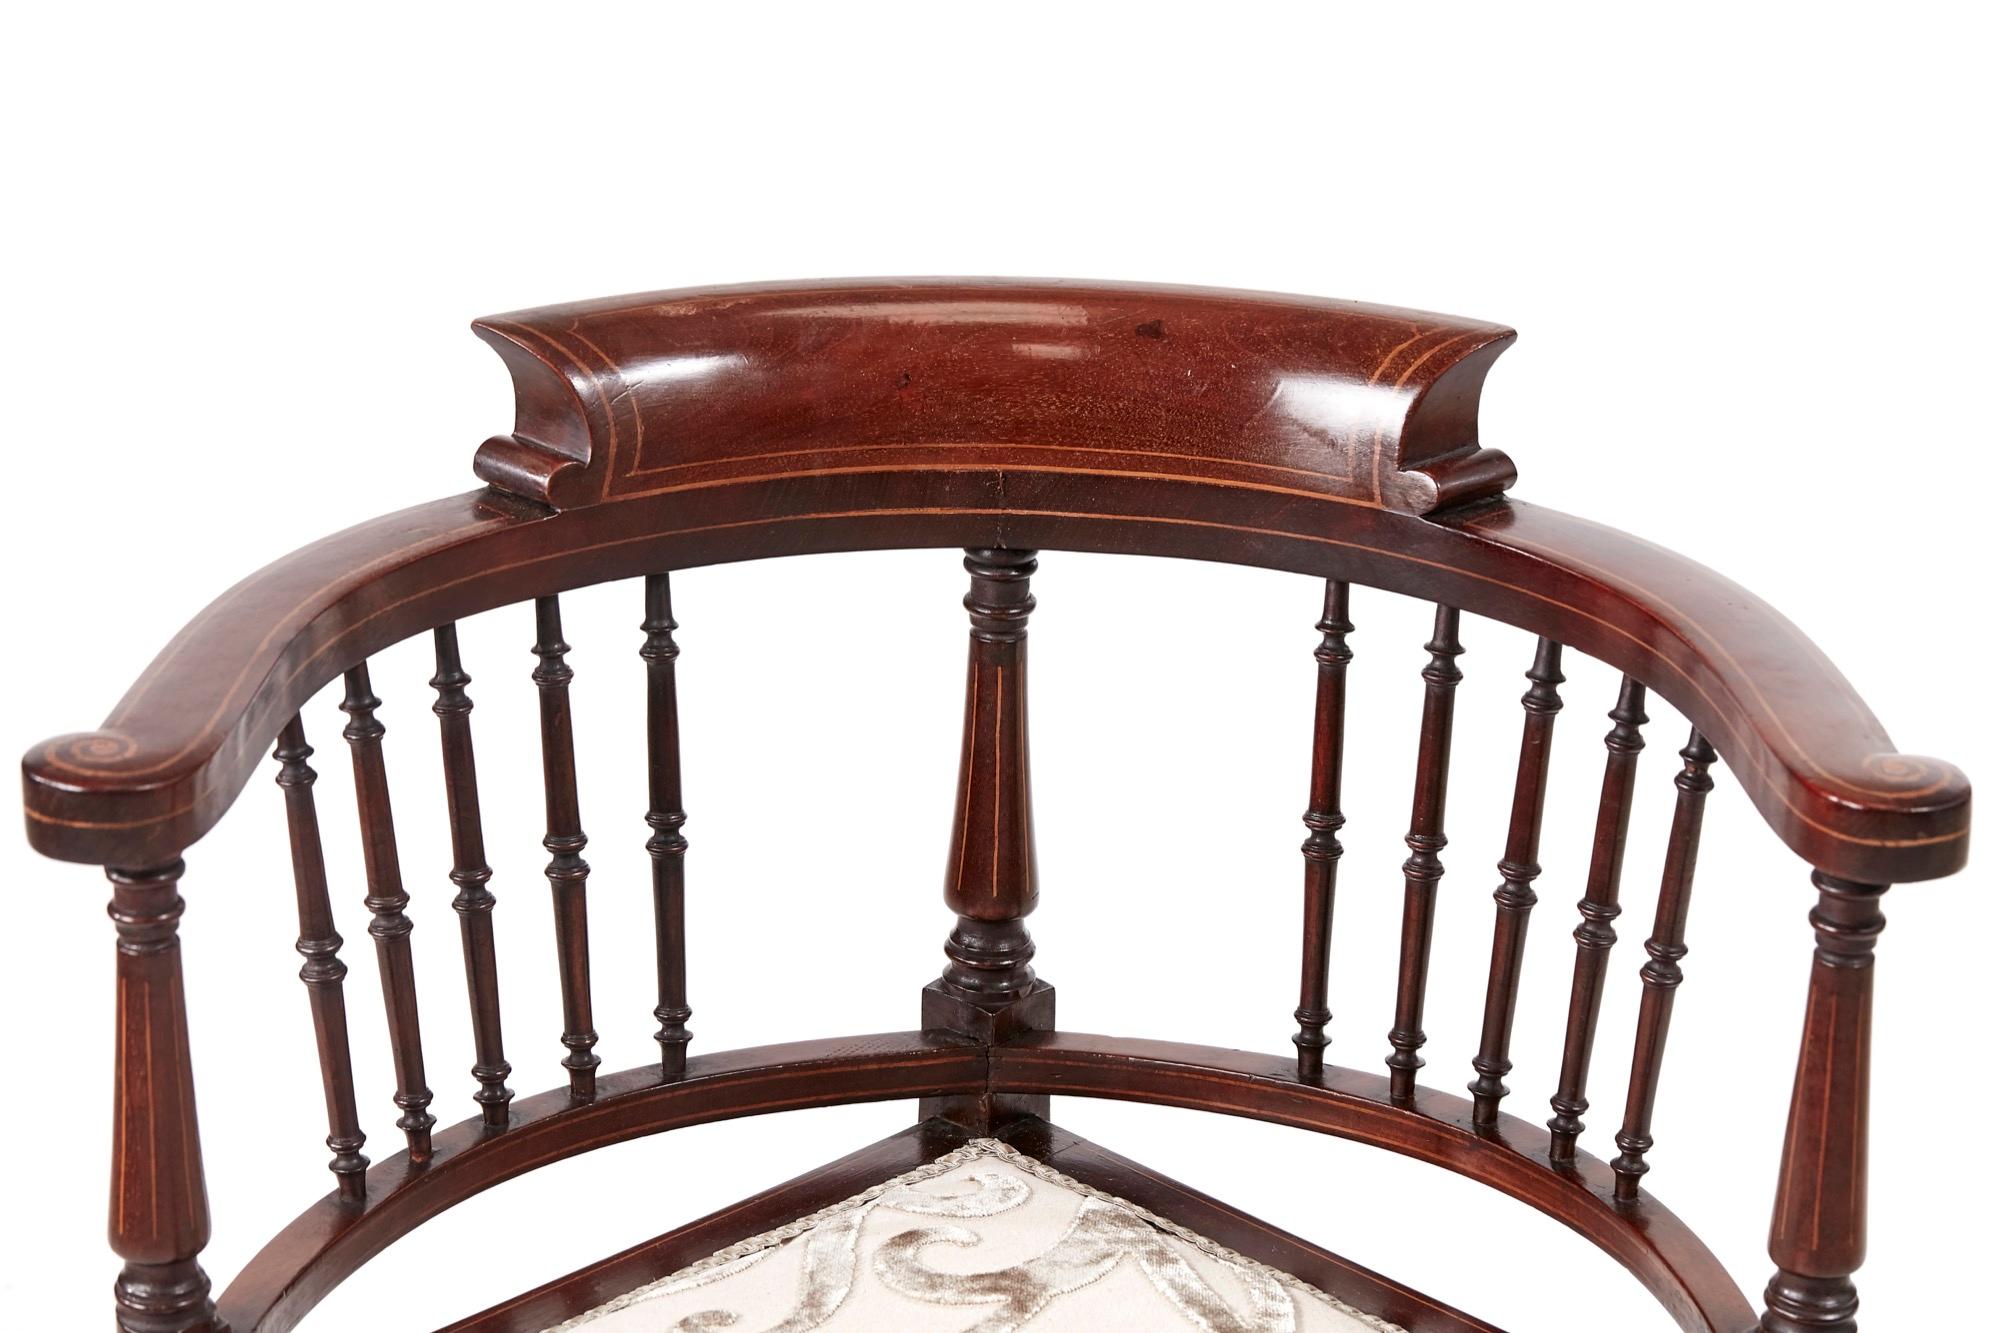 Hochwertiger Edwardianischer Mahagoni-Eckstuhl mit Intarsien. Dies ist ein sehr attraktiver Stuhl in perfektem Zustand mit einer schönen Qualität geformte Rückenlehne mit Satinholz-Inlay, neu erholt Sitz, stehend auf gedrehten verjüngten Beinen